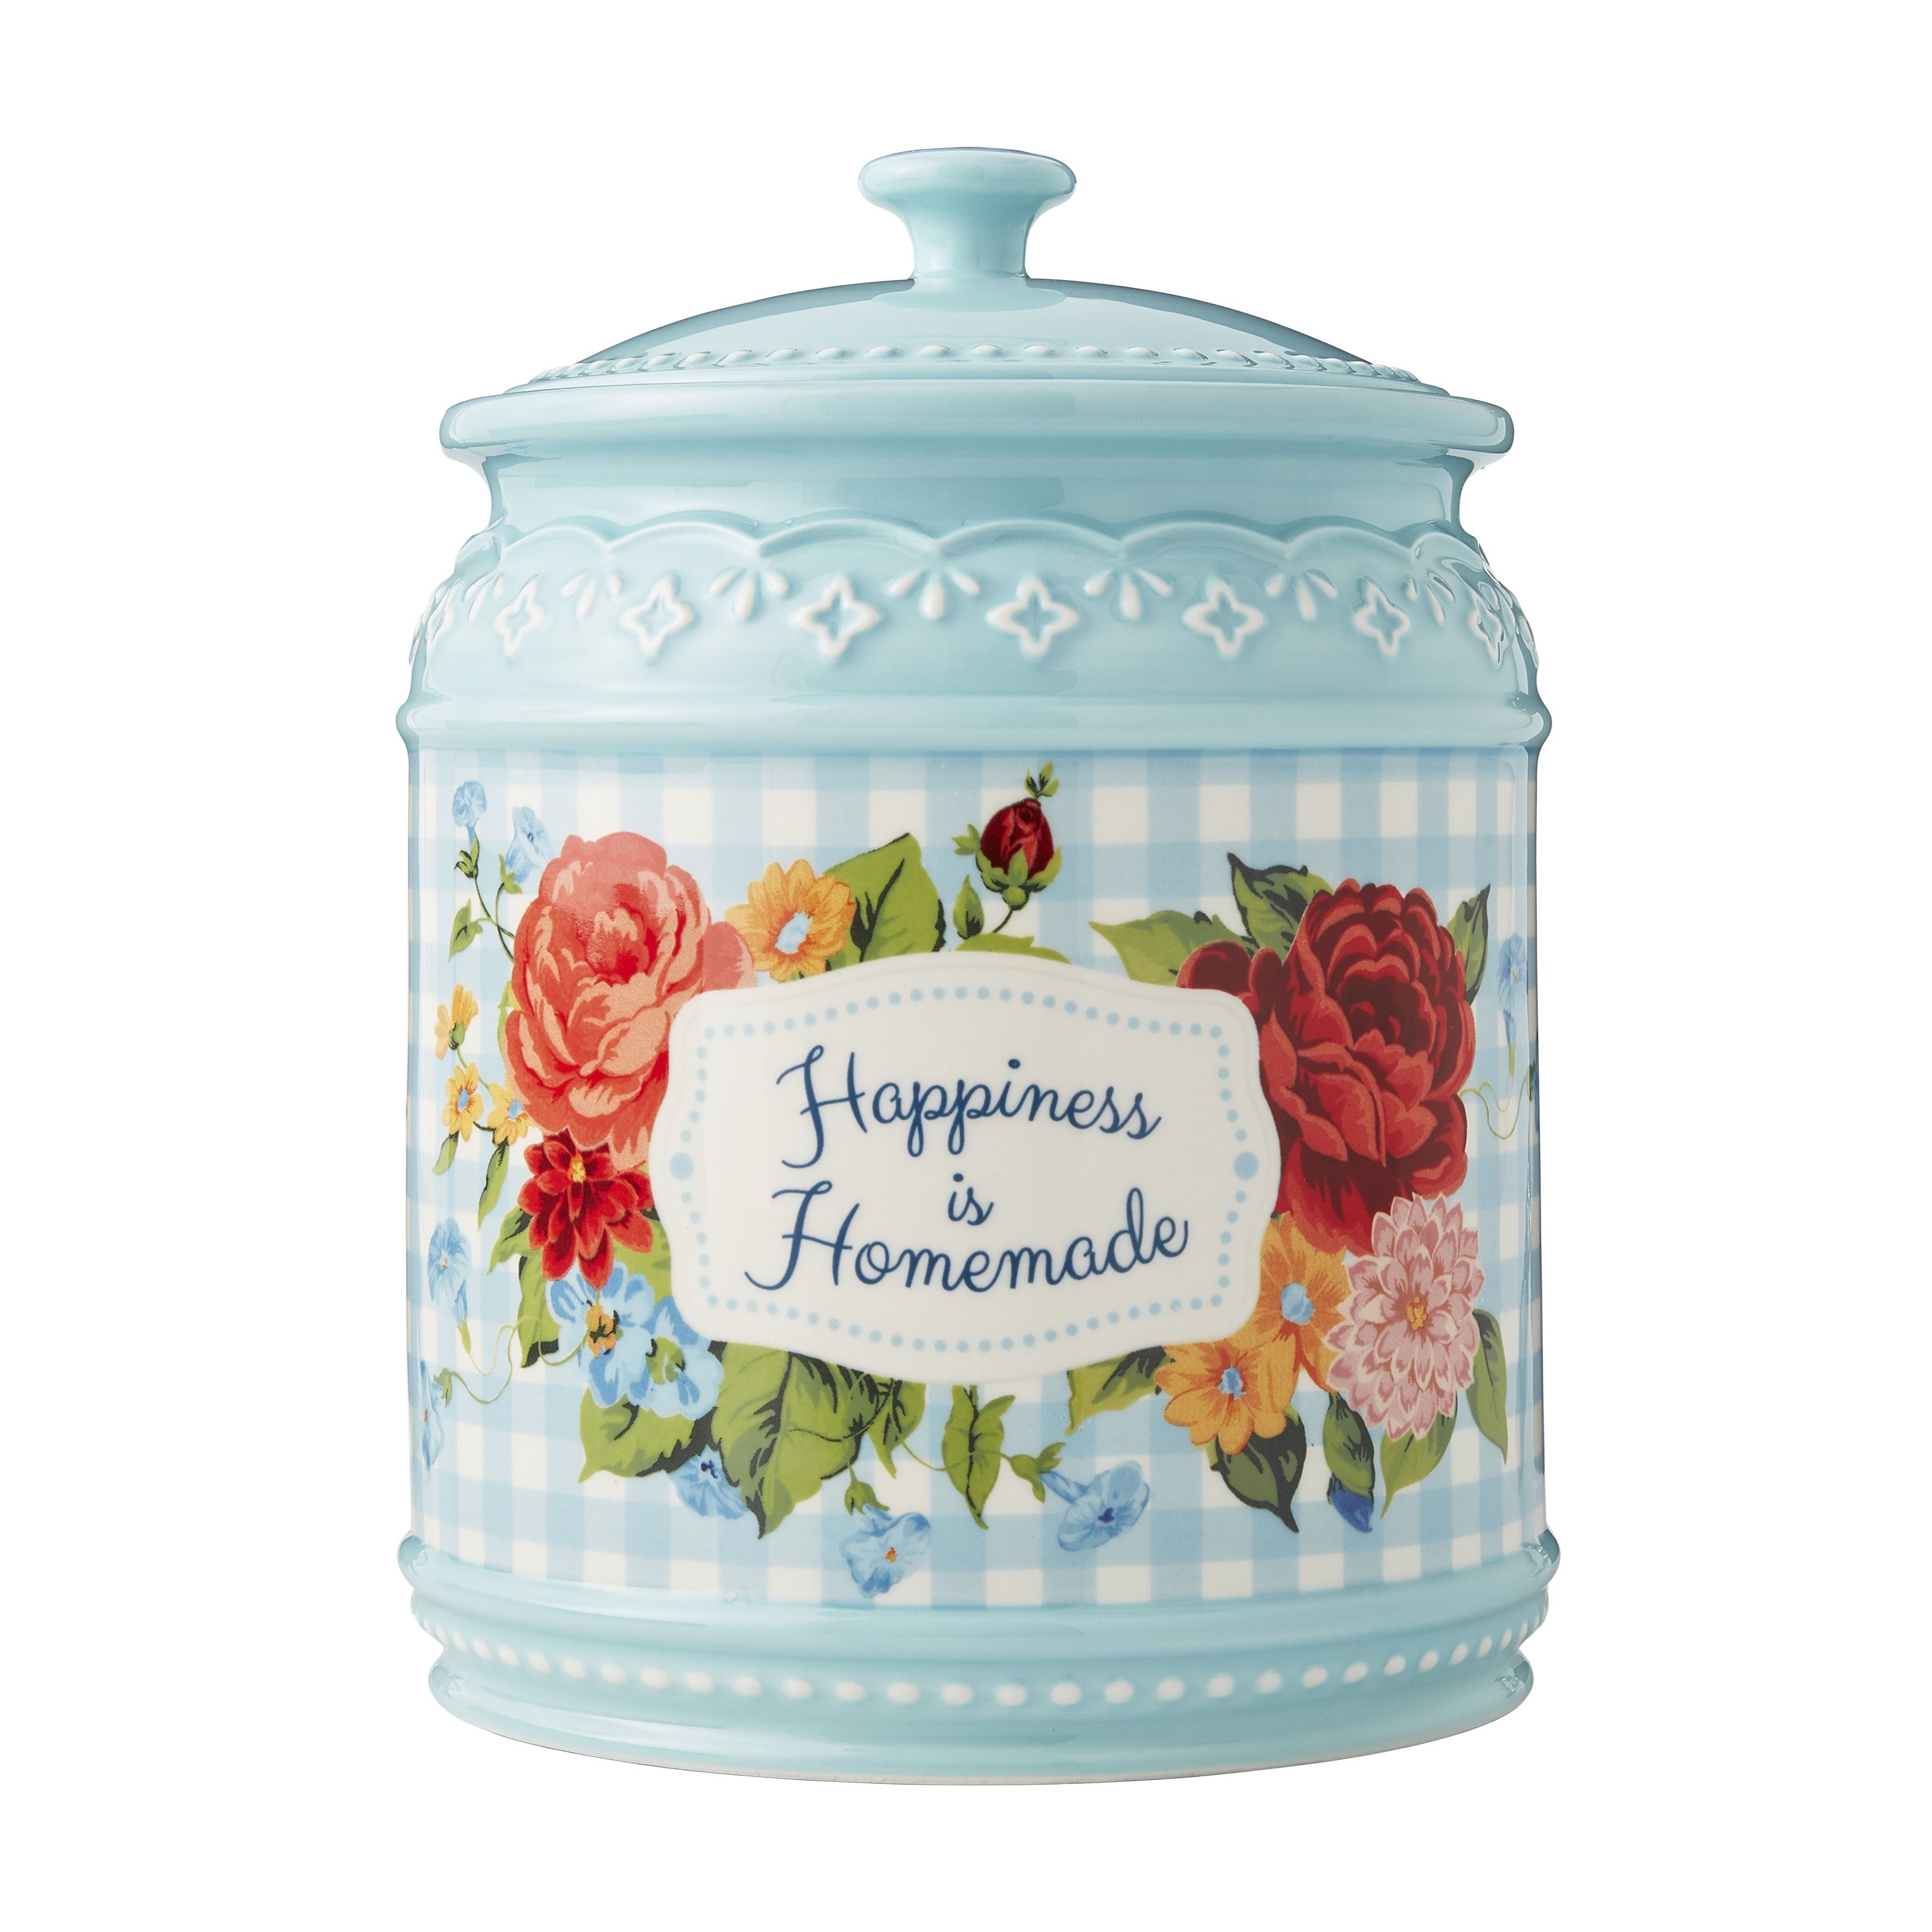 The Pioneer Woman Stoneware Cookie Jar